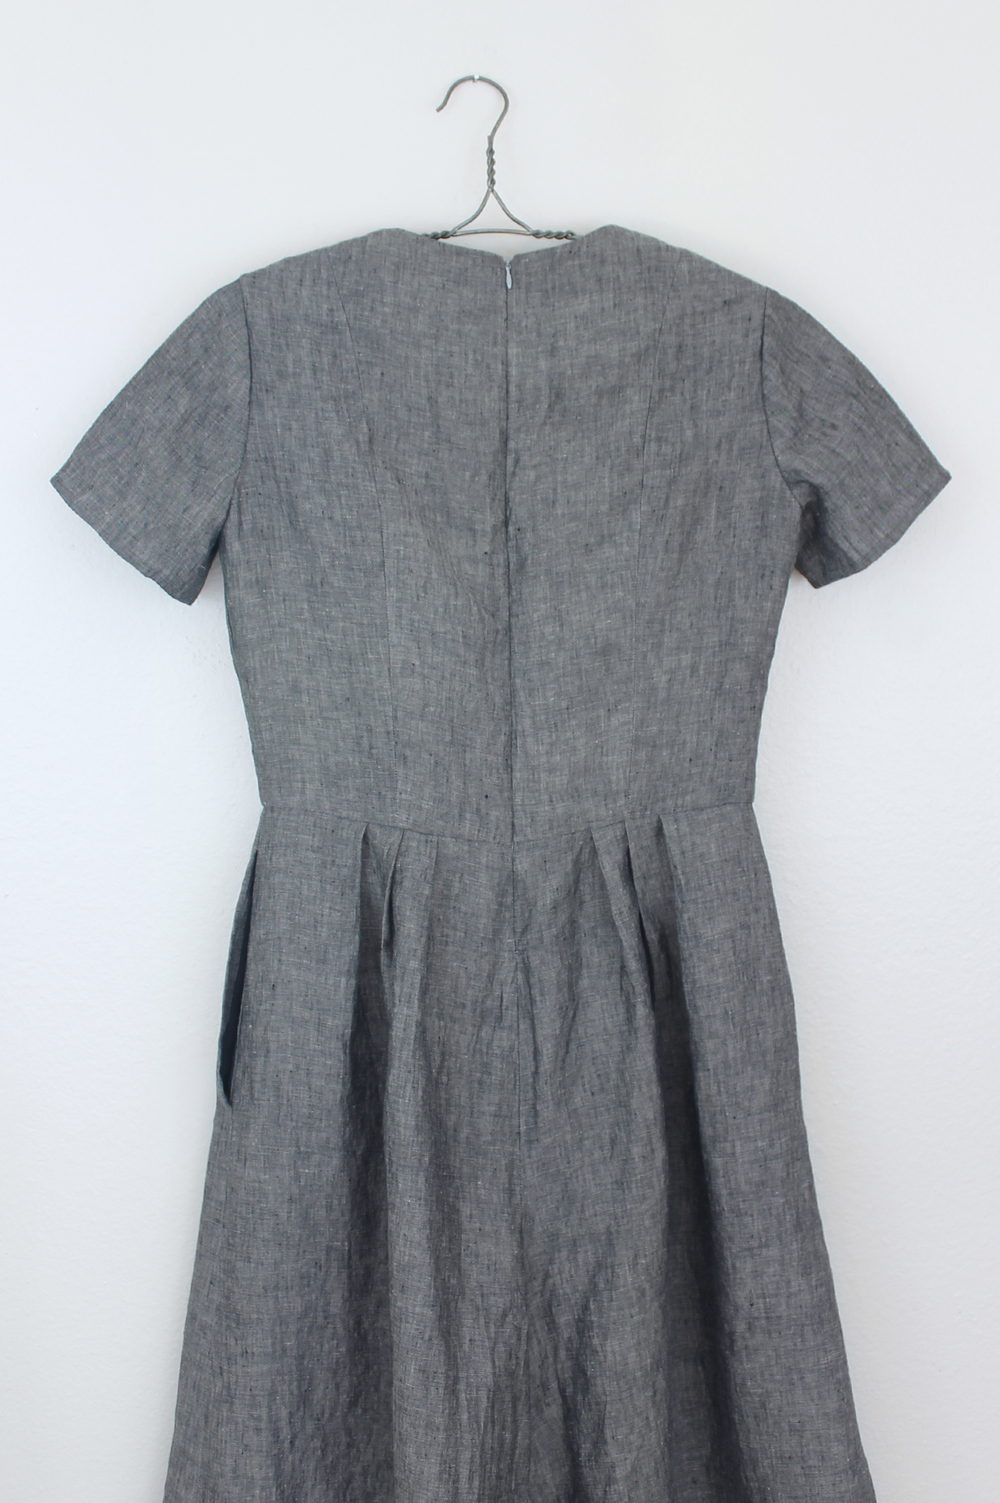 DIY Linen Jumpsuit – Vogue V9075 — Sew DIY